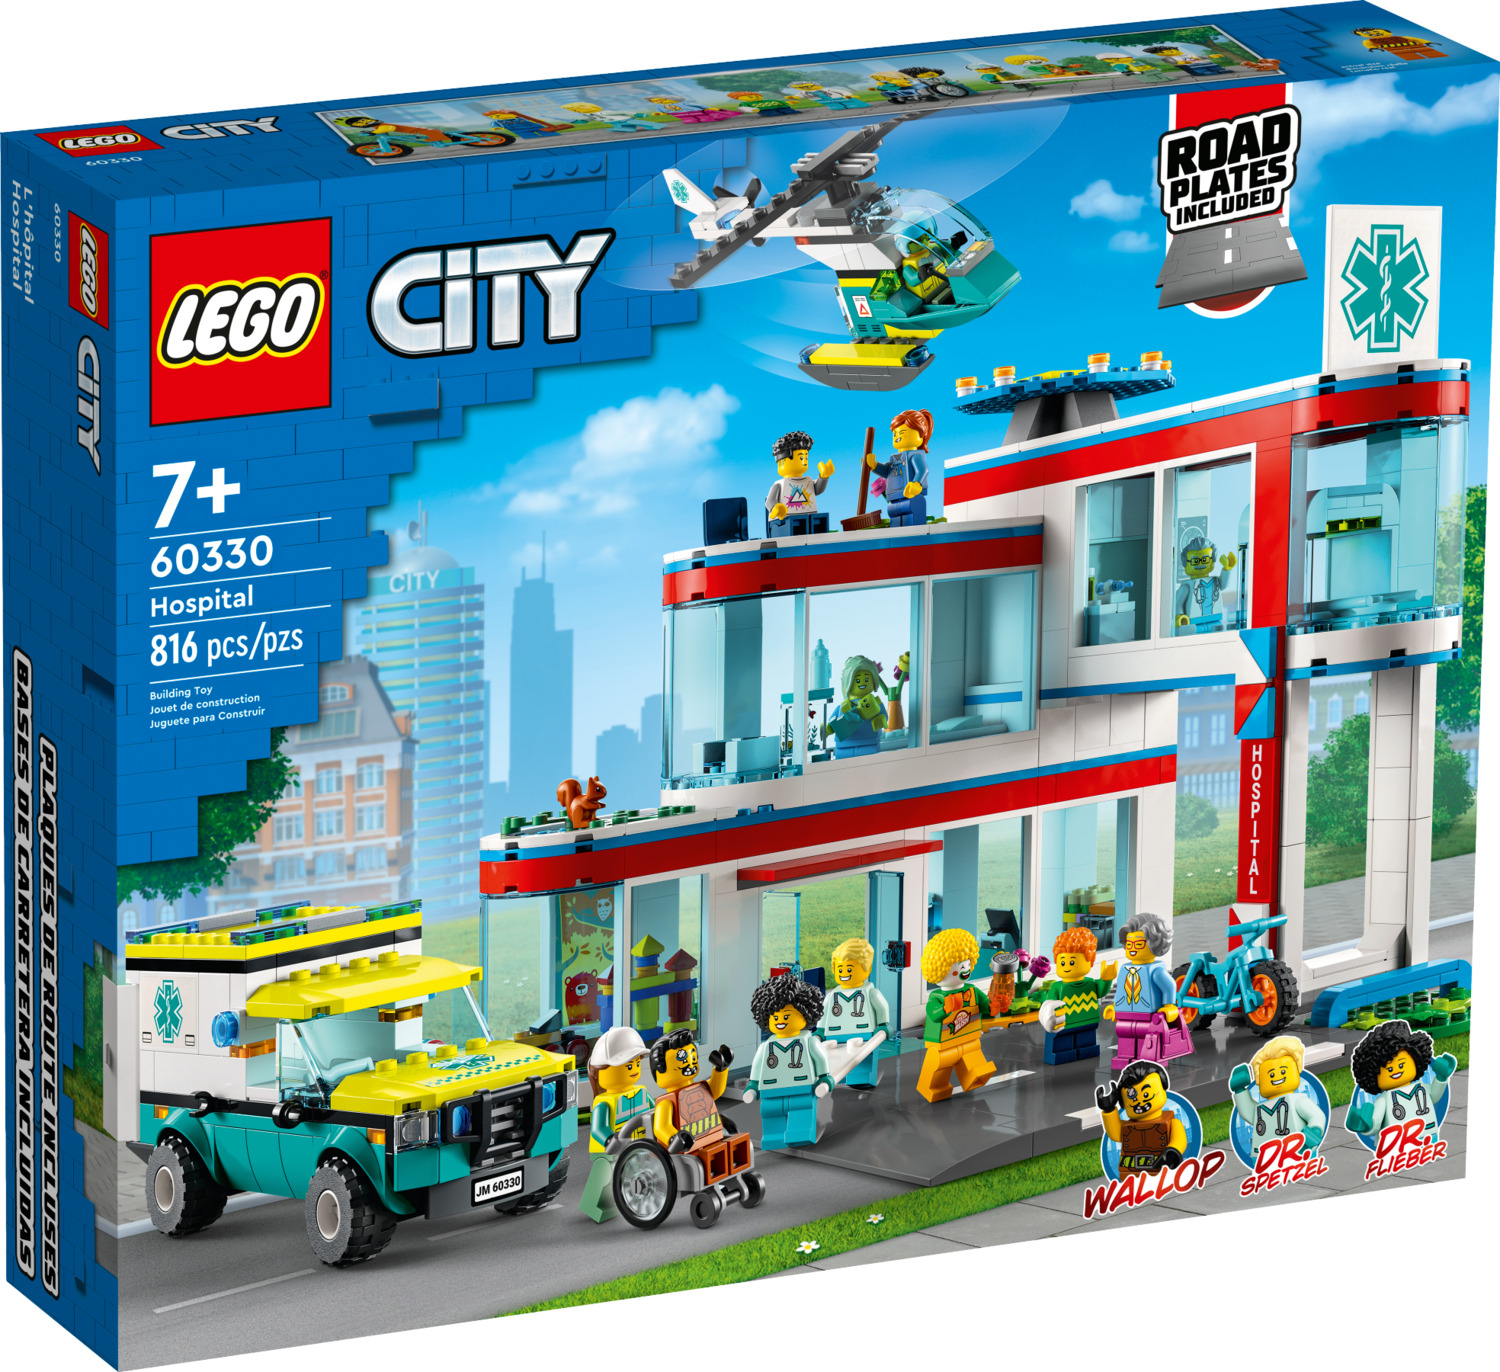 LEGO City Hospital 60330 - Building